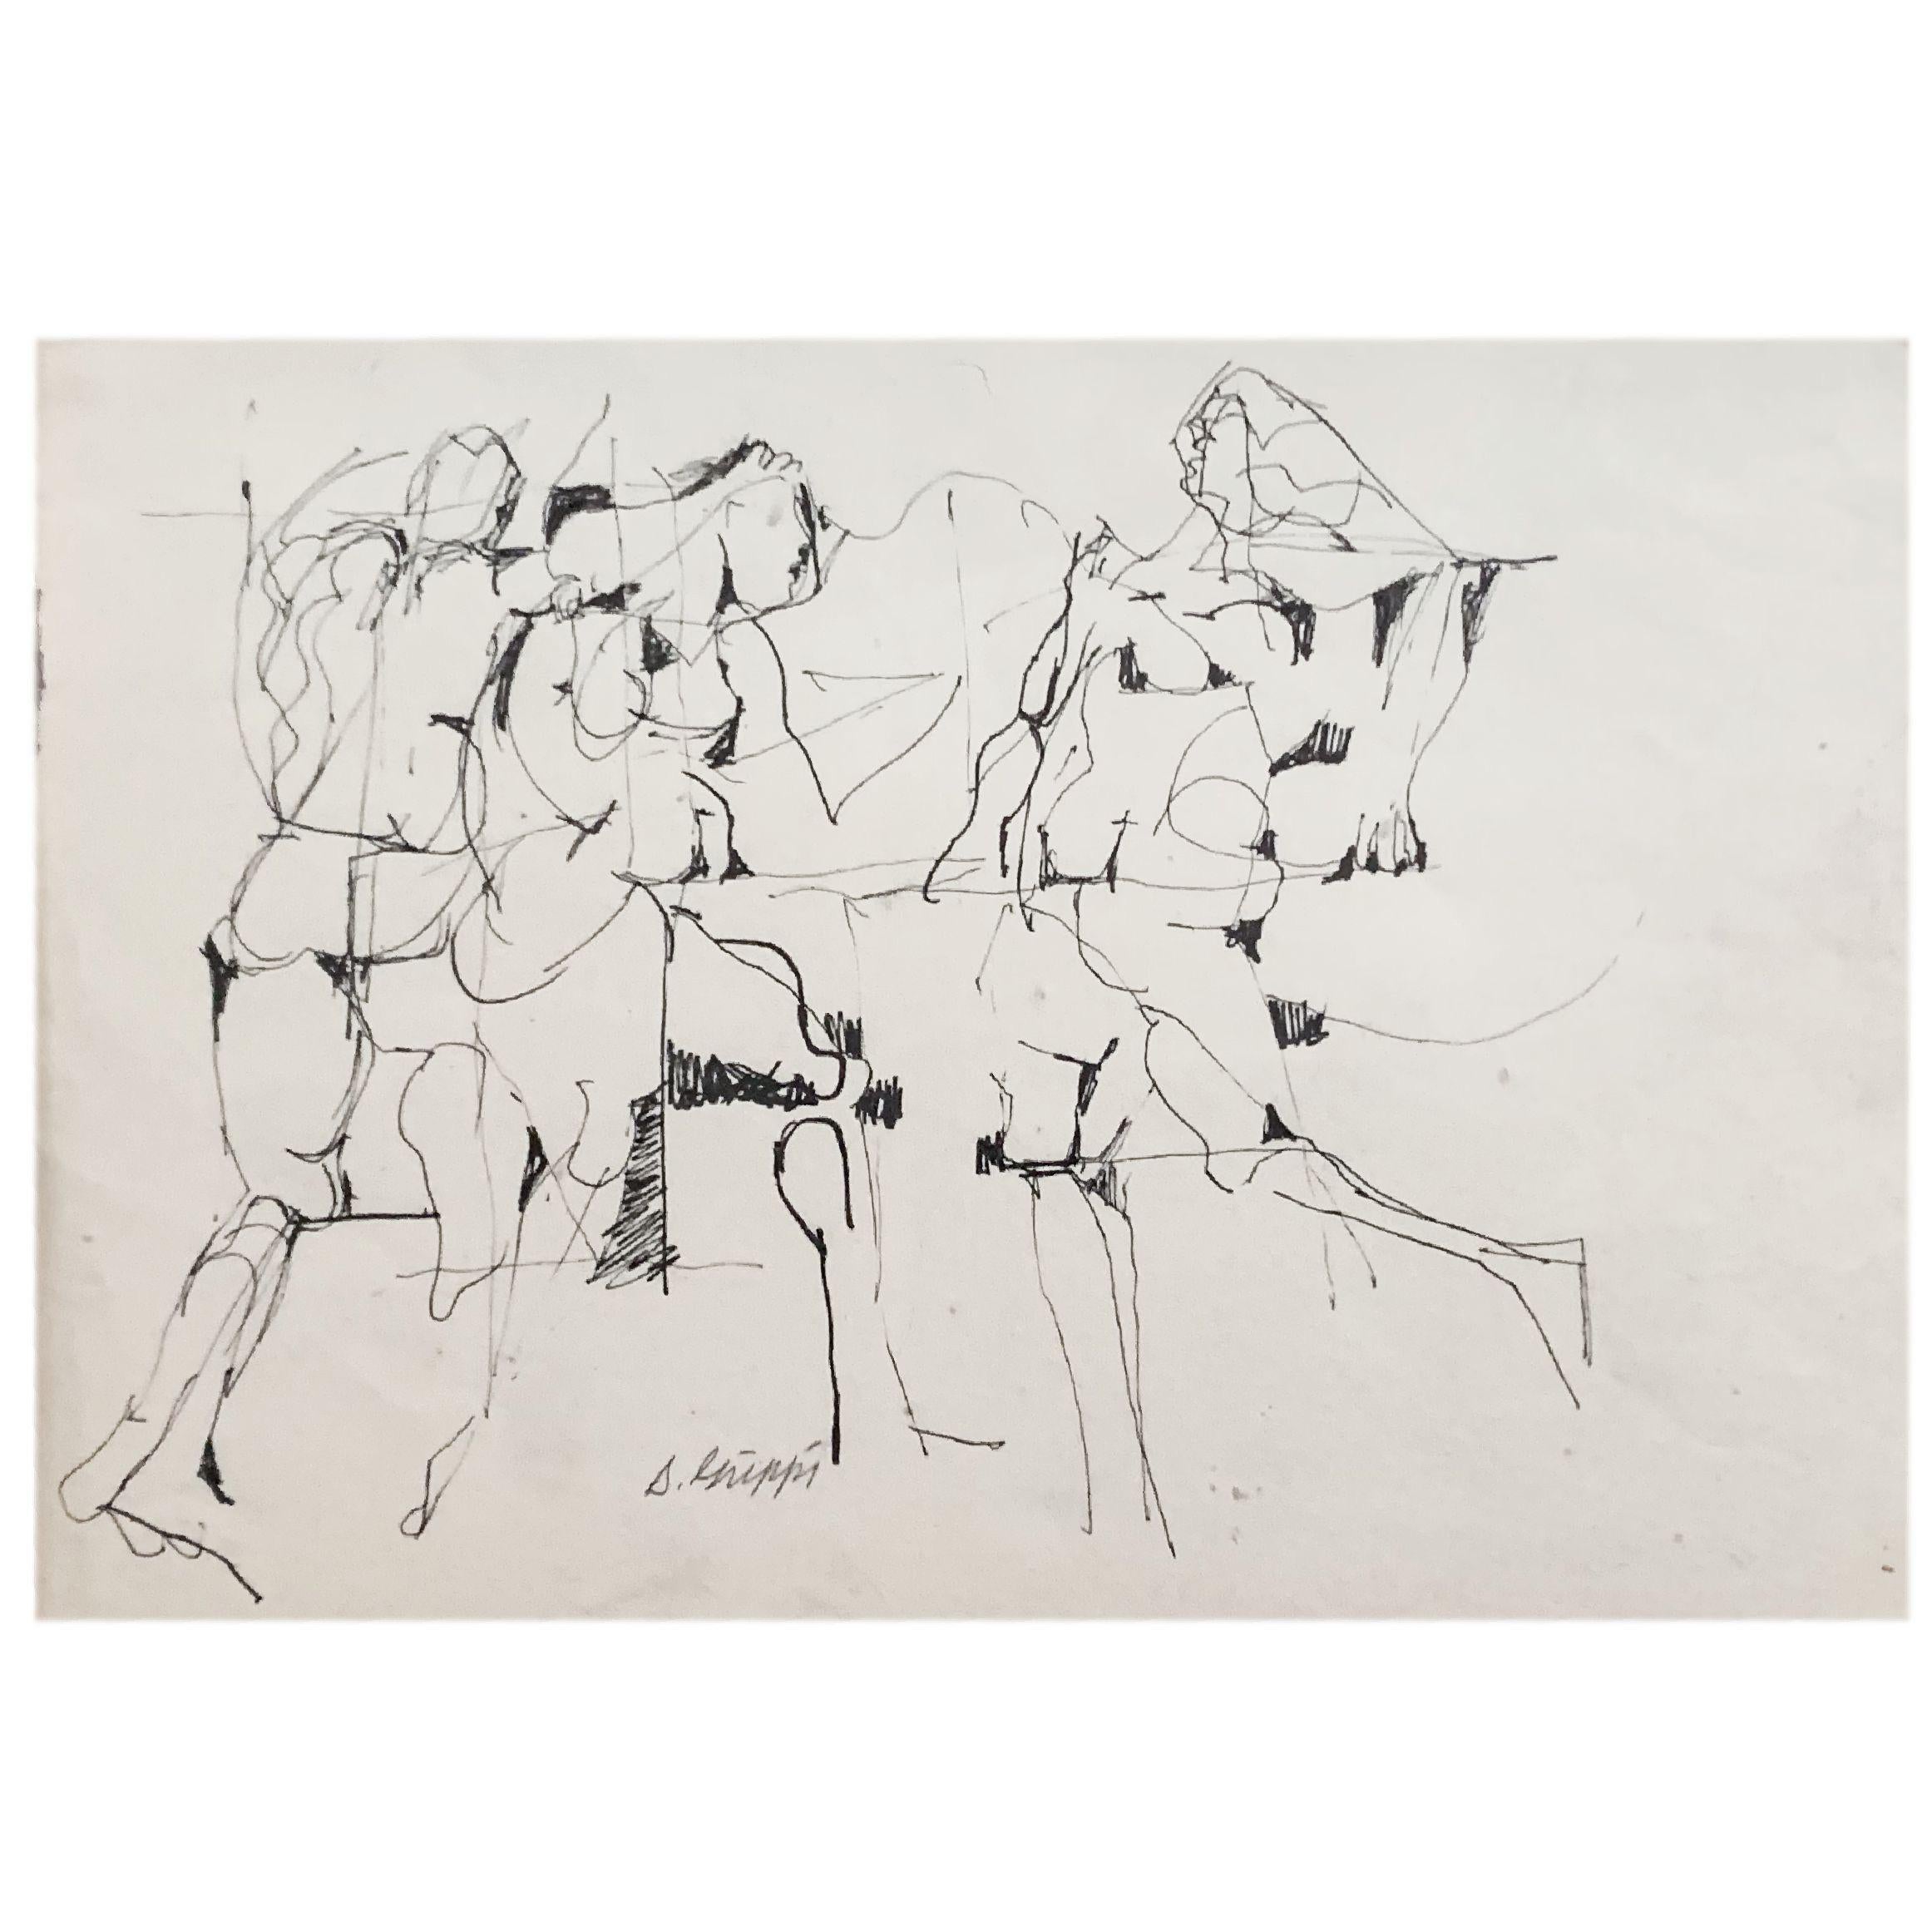 Dieses figurative, abstrakte Expressionisten-Tintenbild auf Papier ist von seinem Schöpfer, dem bekannten New Yorker Künstler Salvatore Grippi, signiert. Das Stück ist zwar undatiert, ähnelt aber in Form und Stil vielen von Grippis frühesten Werken